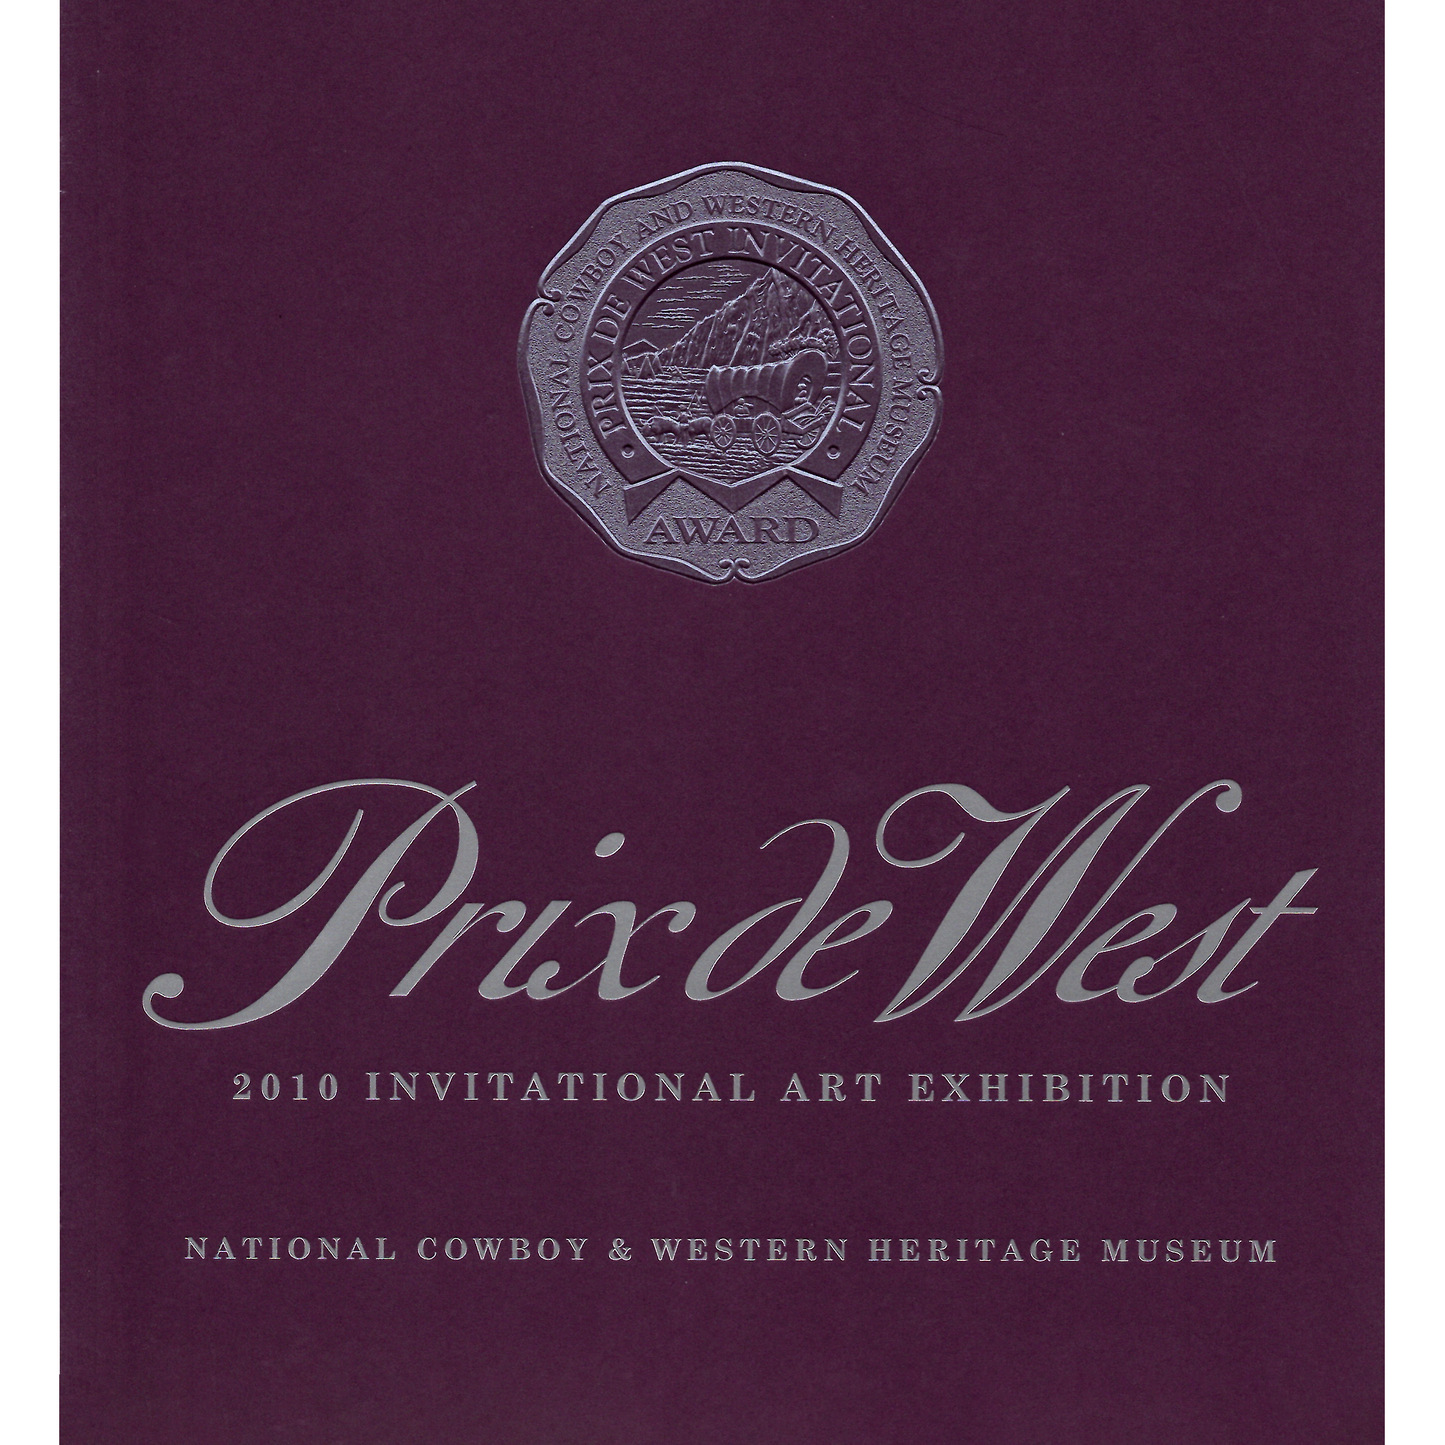 2010 Prix de West Exhibition Catalog